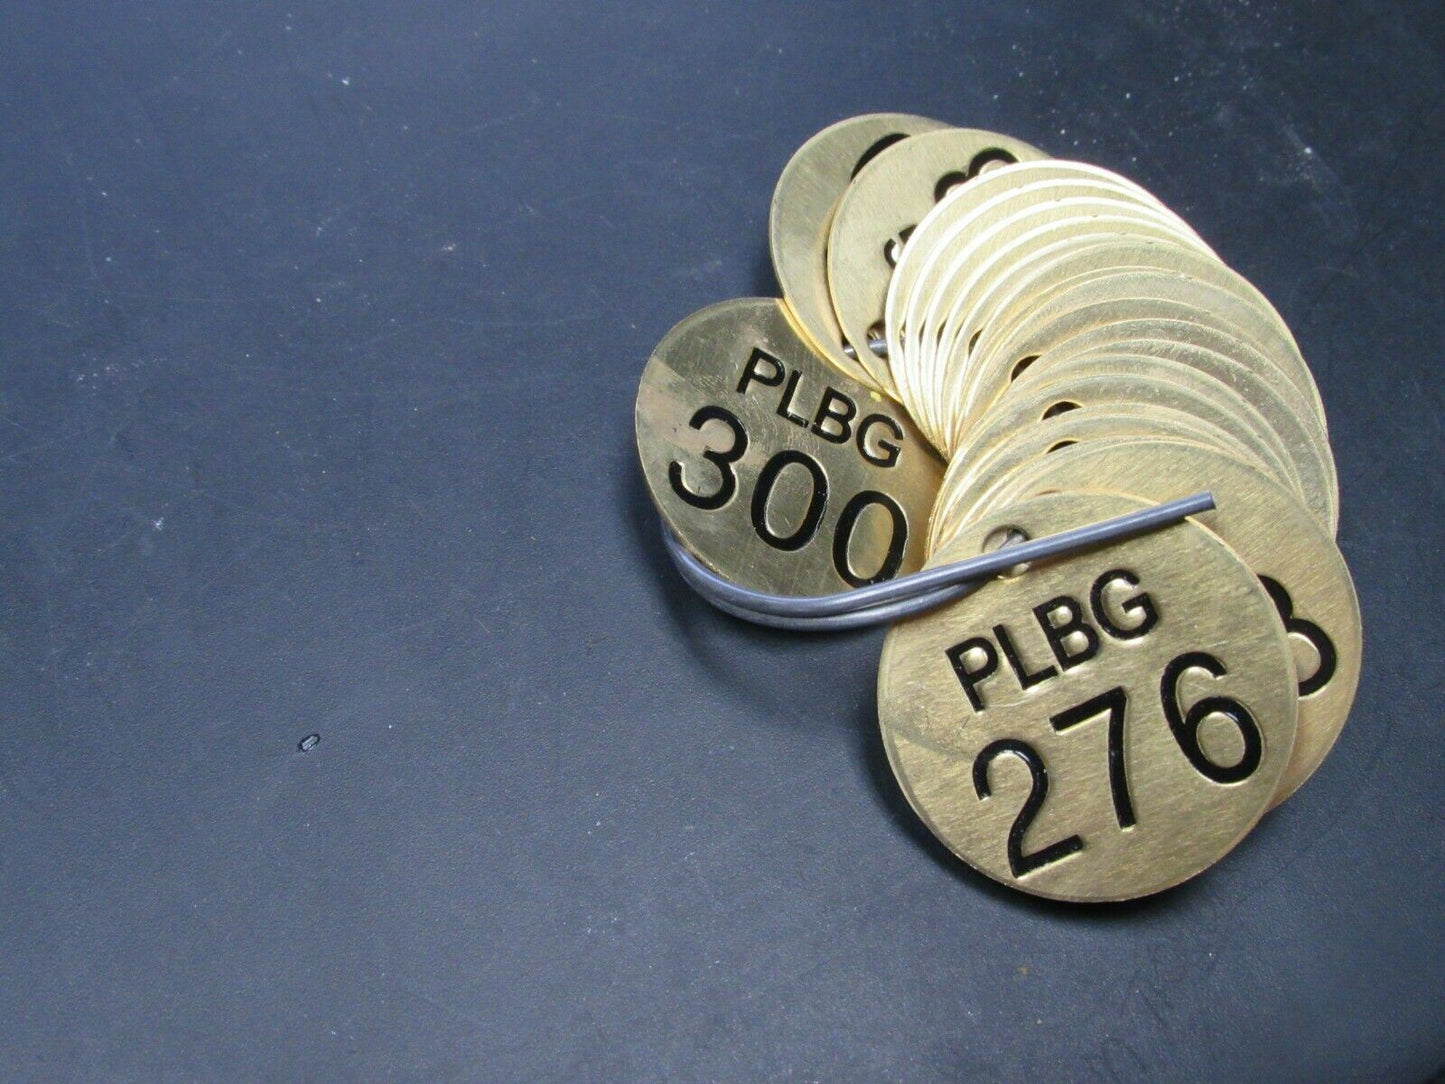 Electromark Brass 1-1/2" Round PLBG Tags 276 thru 300 (184254914746-BT35)